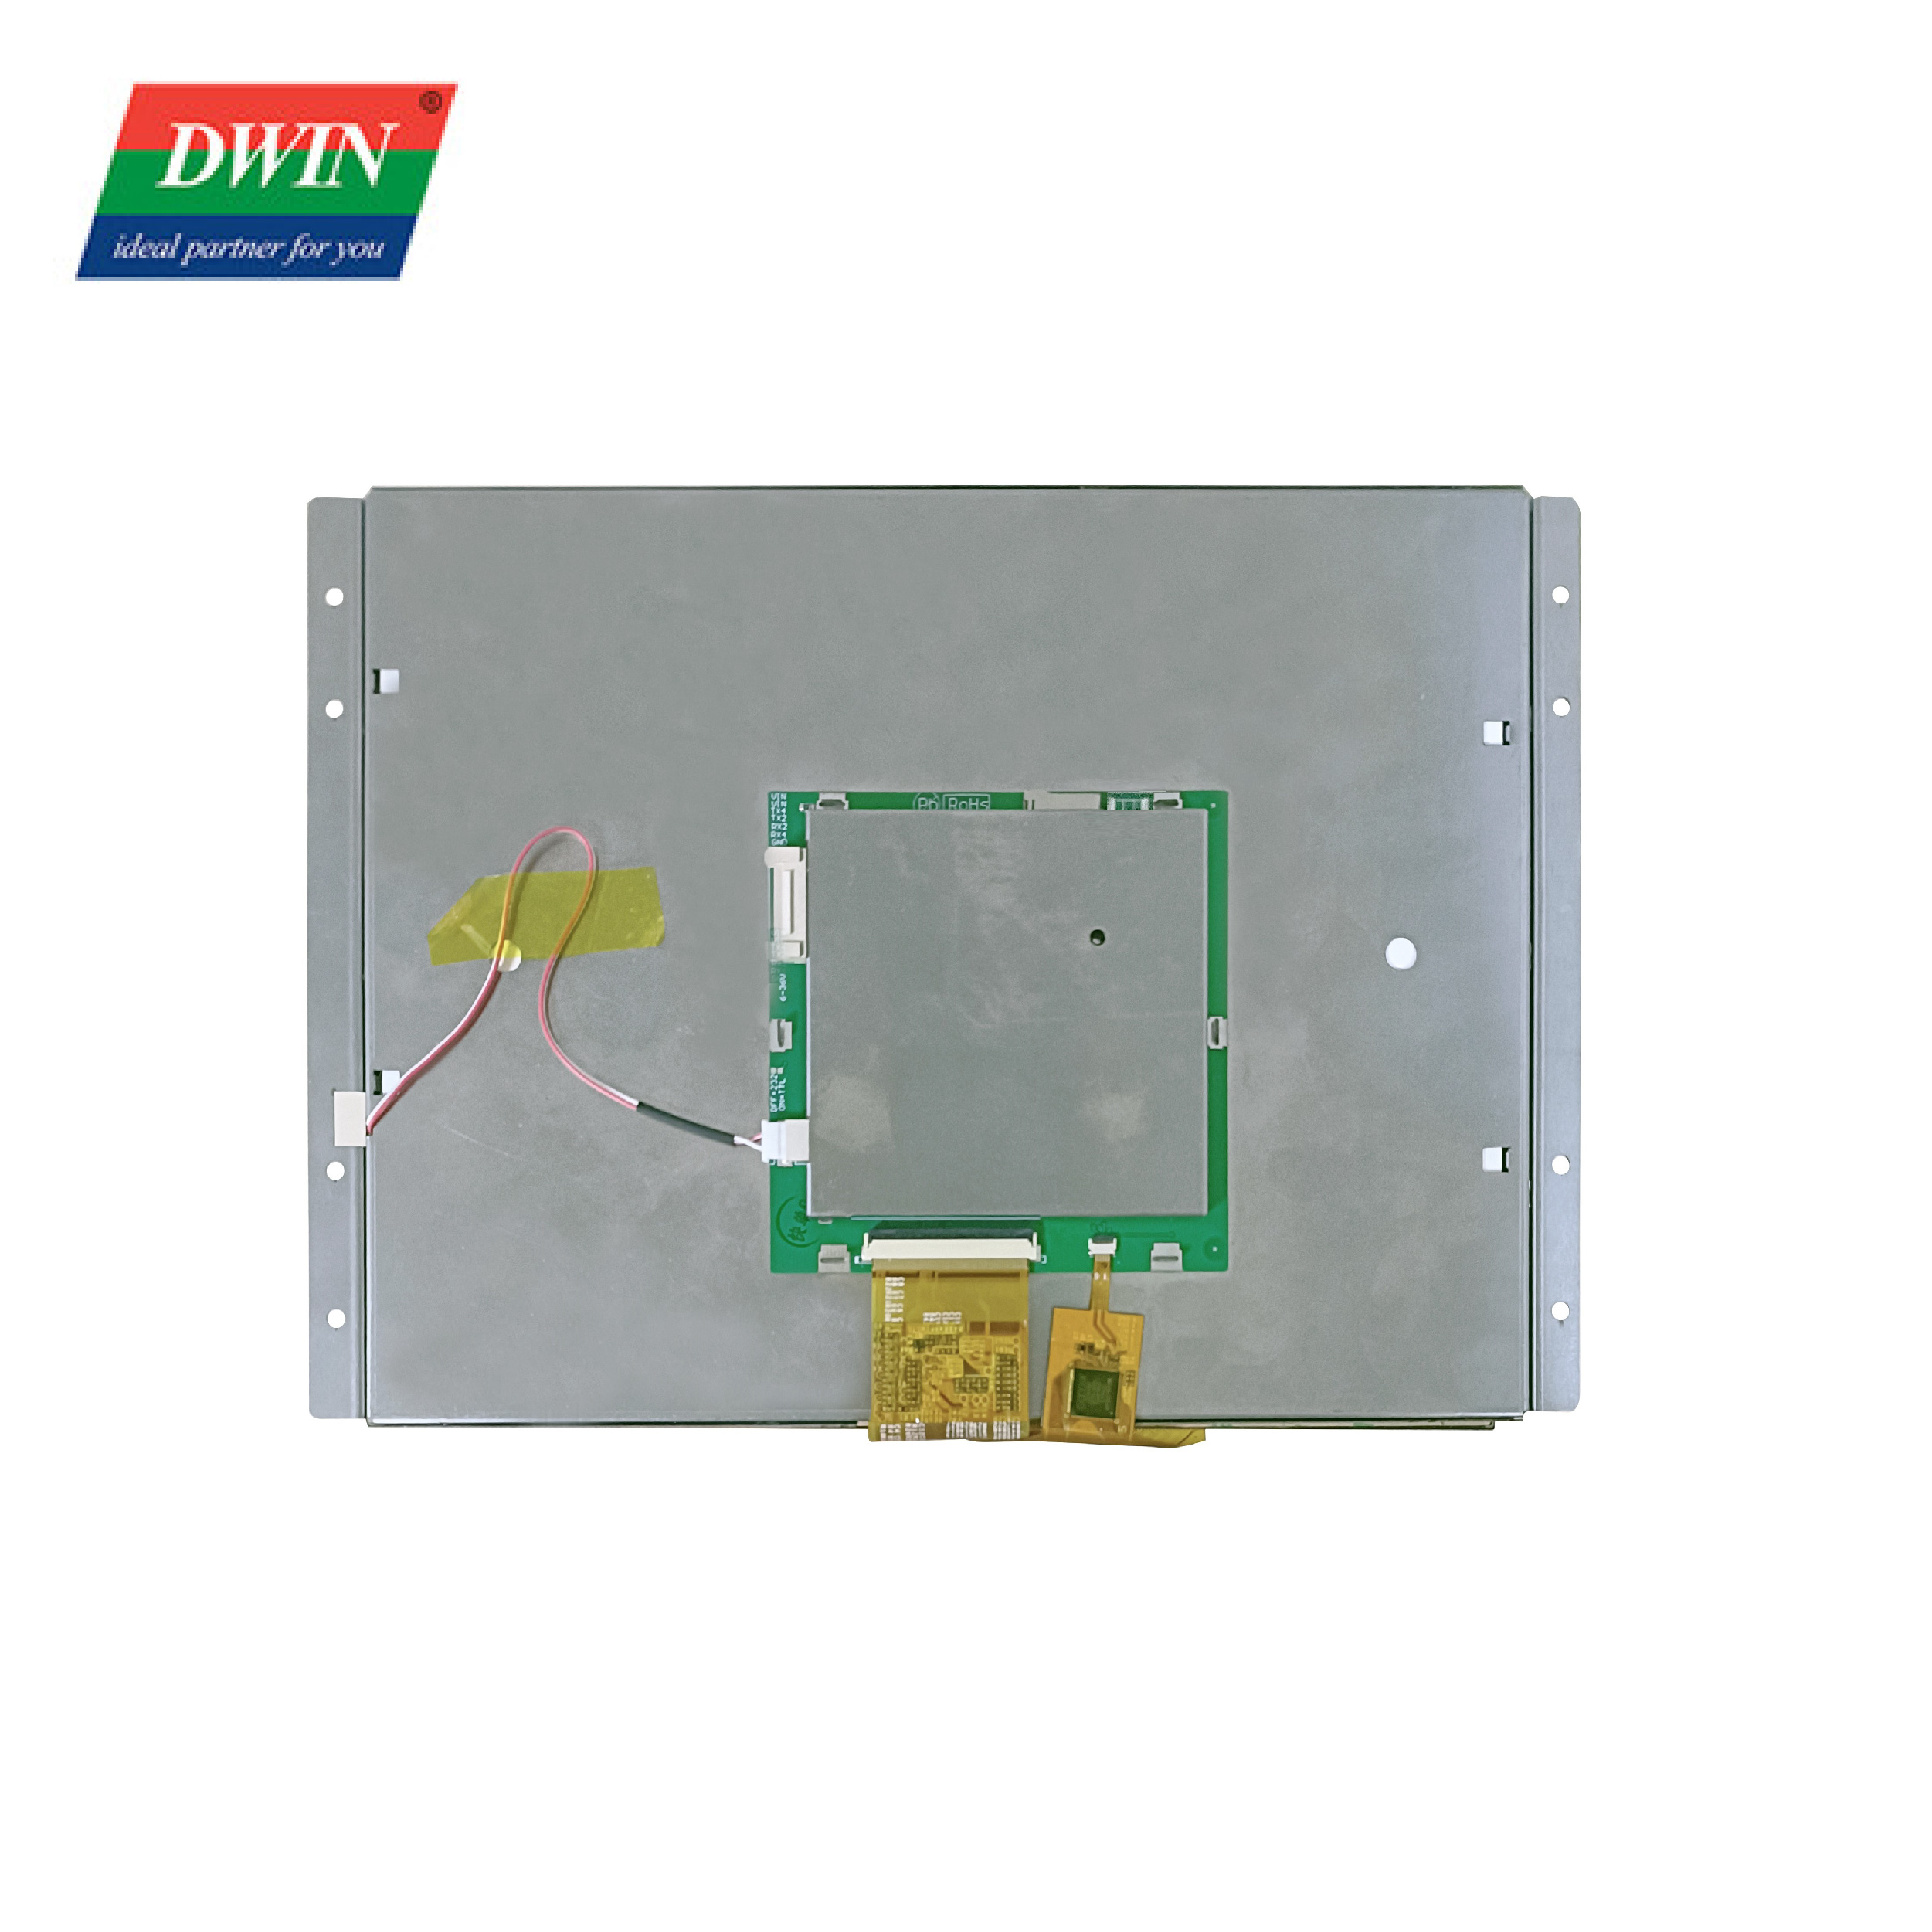 10.4 Nti LCD kov vaj huam sib luag DMG80600L104_01W (Consumer Qib)